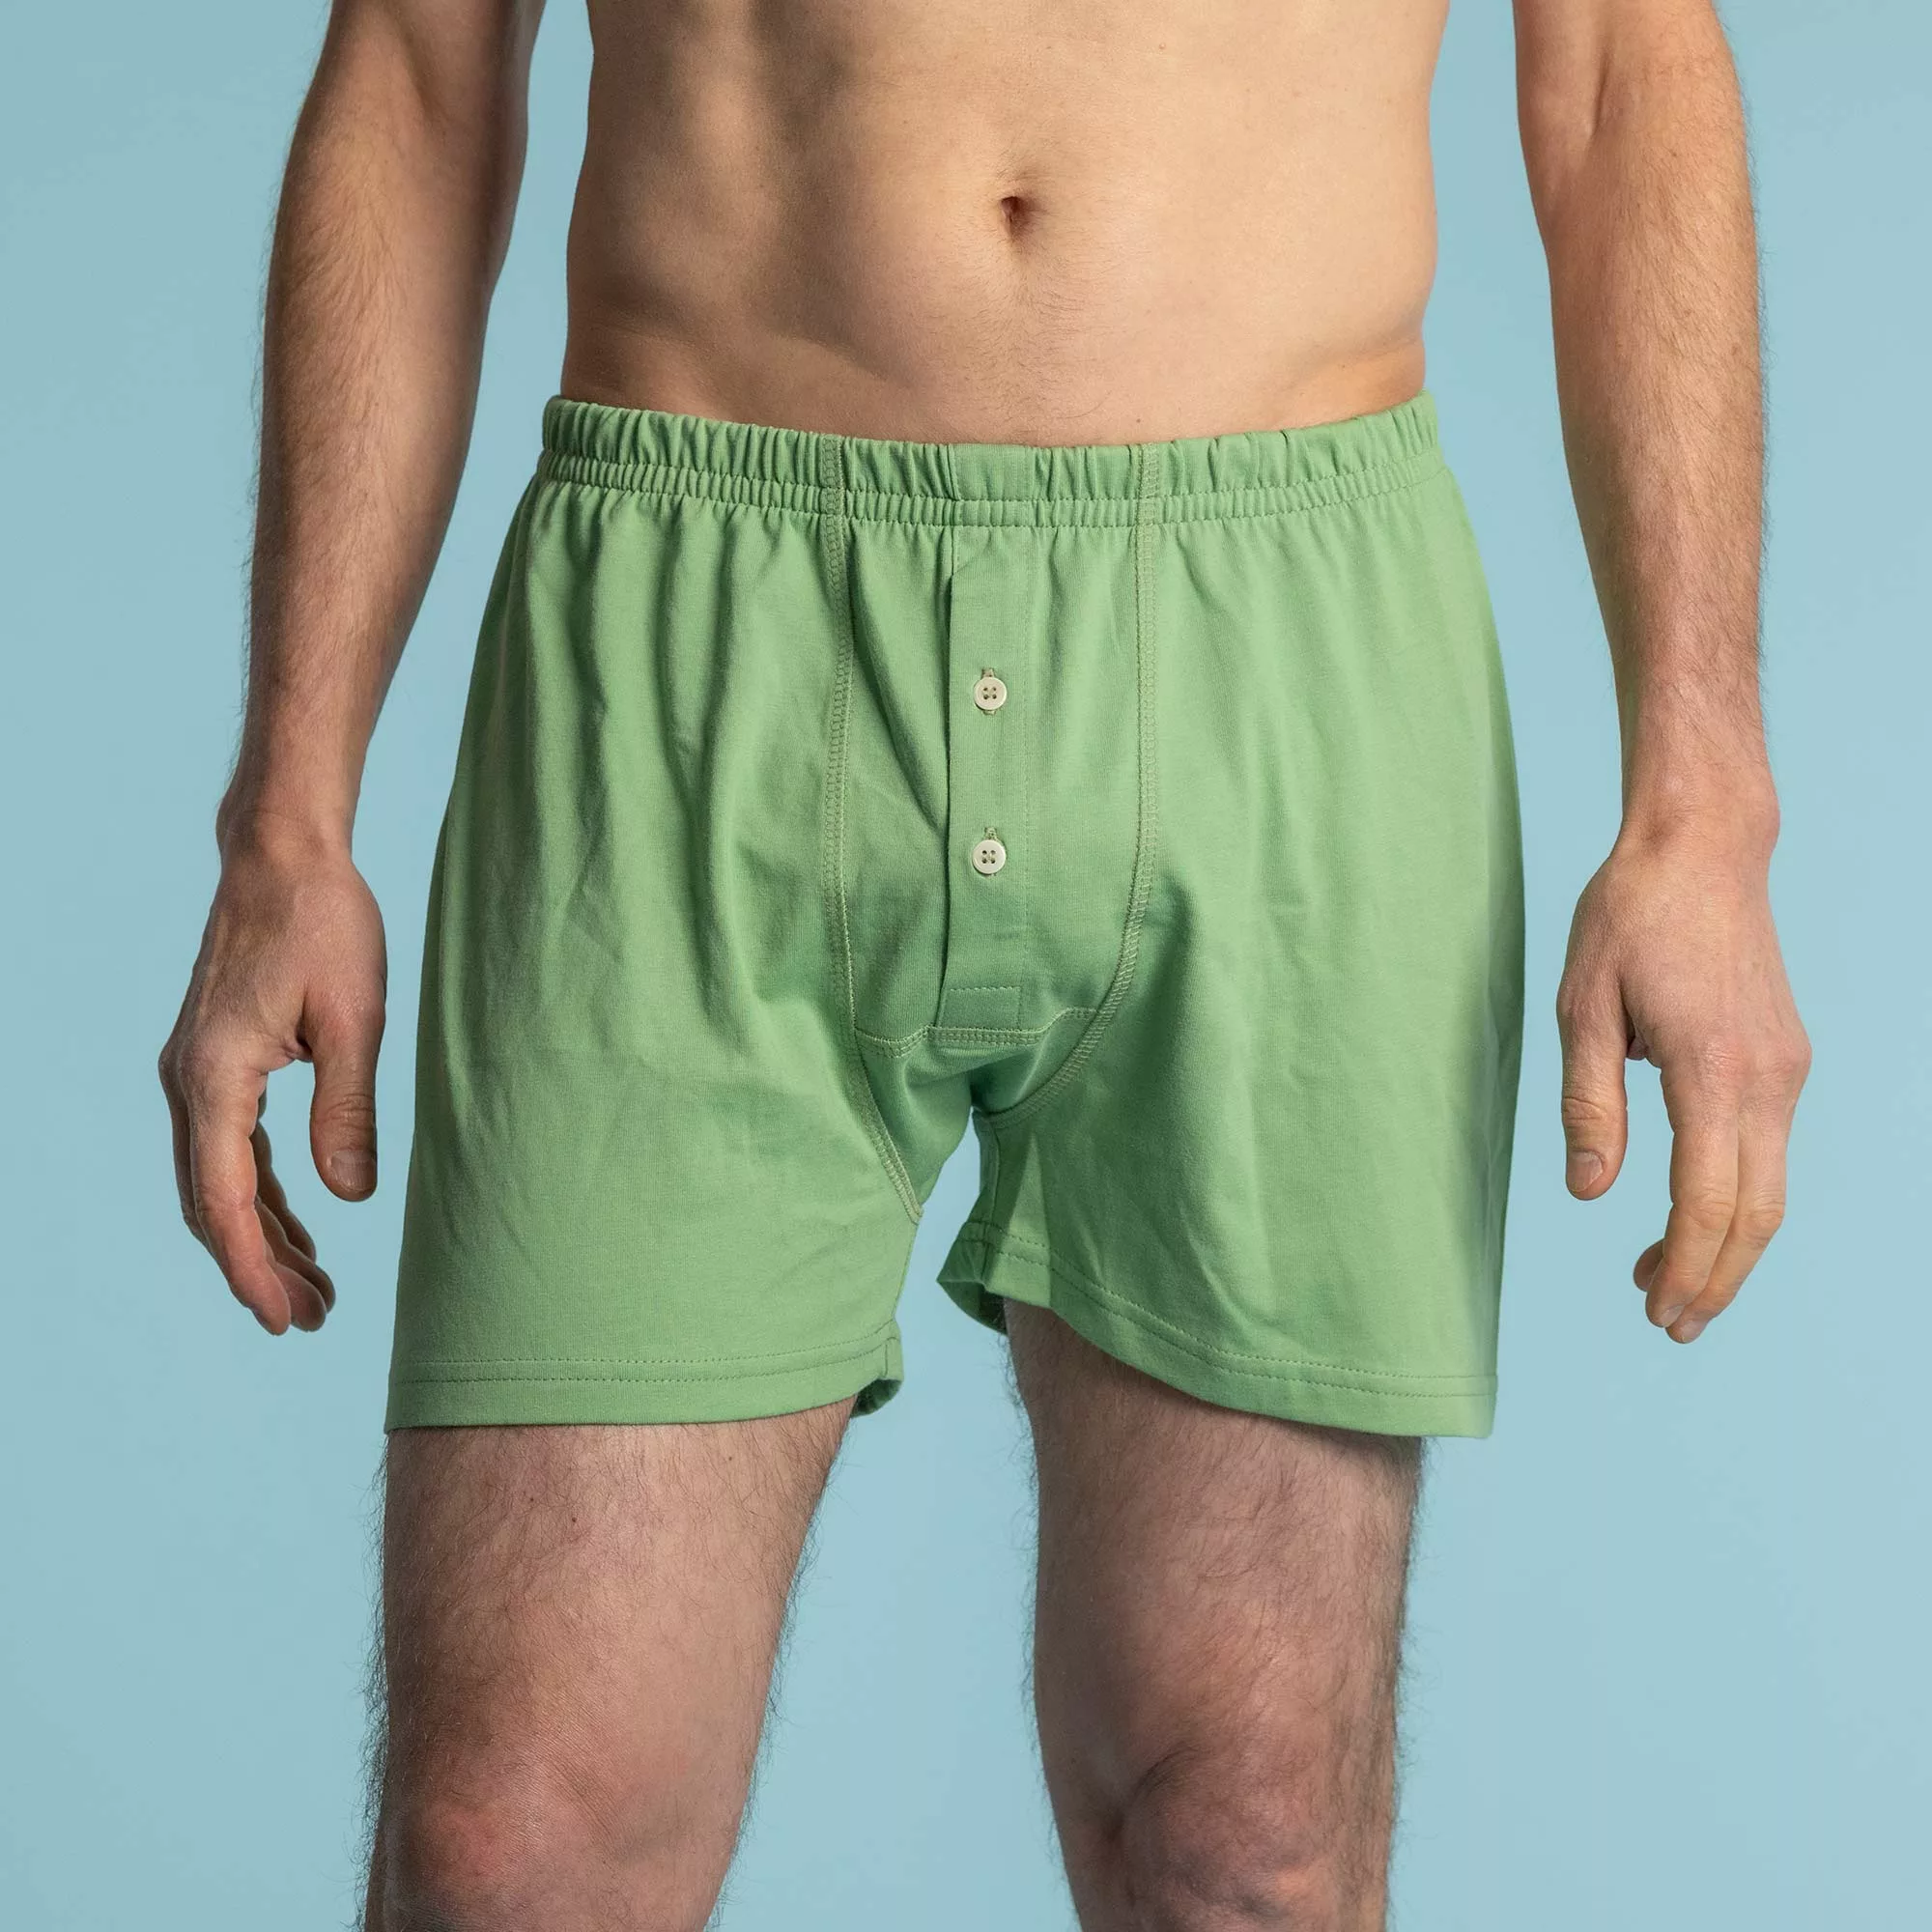 Top 10 Hemp Underwear Brands For Sustainable Comfort — Ecowiser